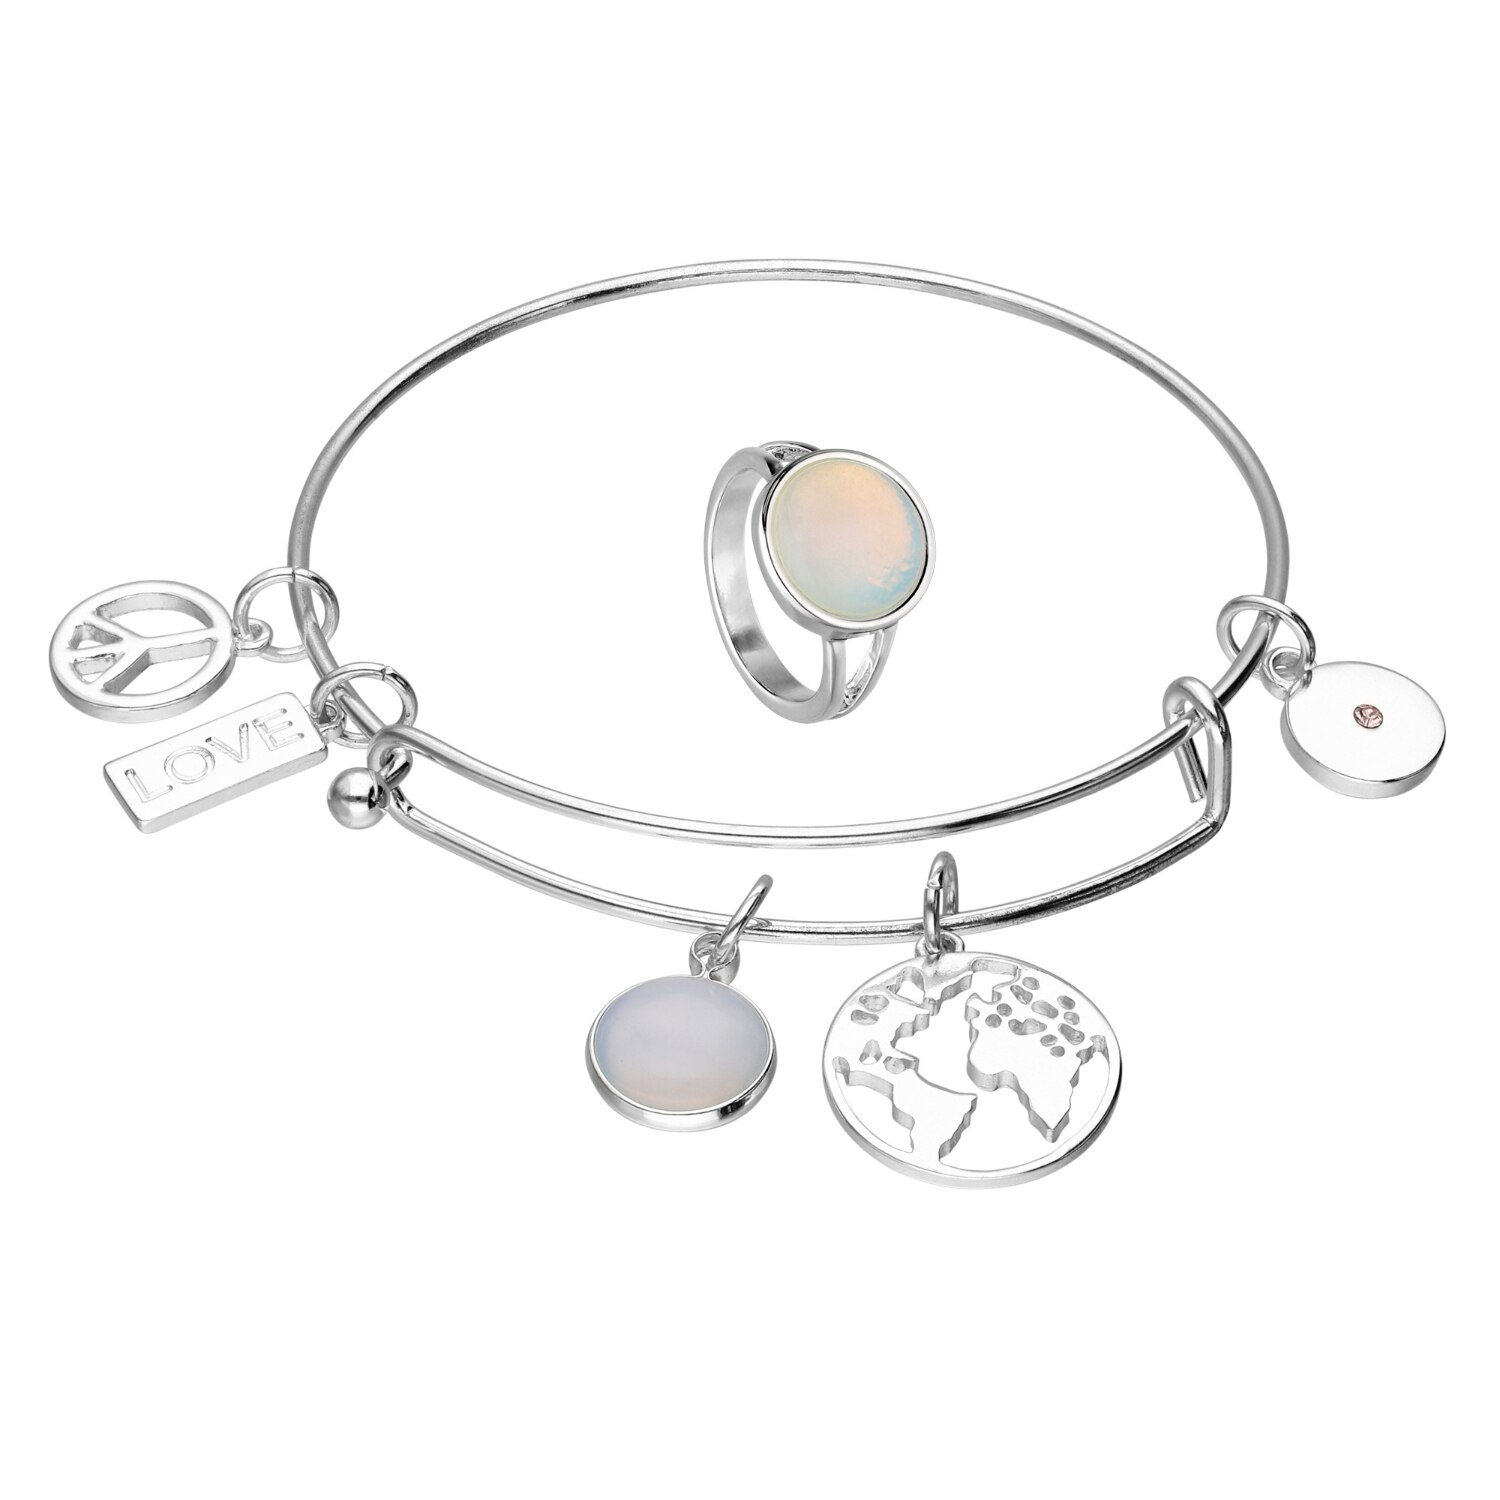 I AM Jewelry Bracelet & Ring Jewelry Set